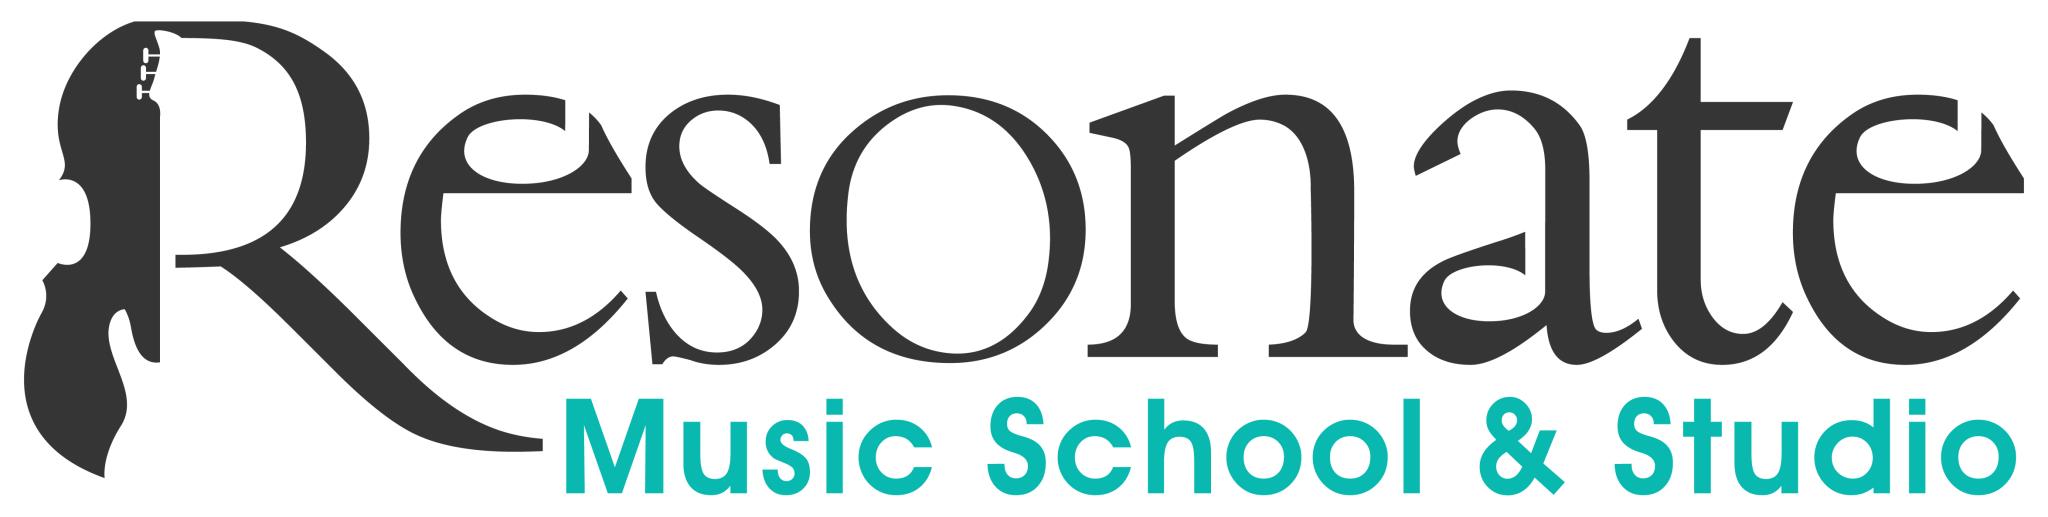 Resonate Music School And Studio Logo